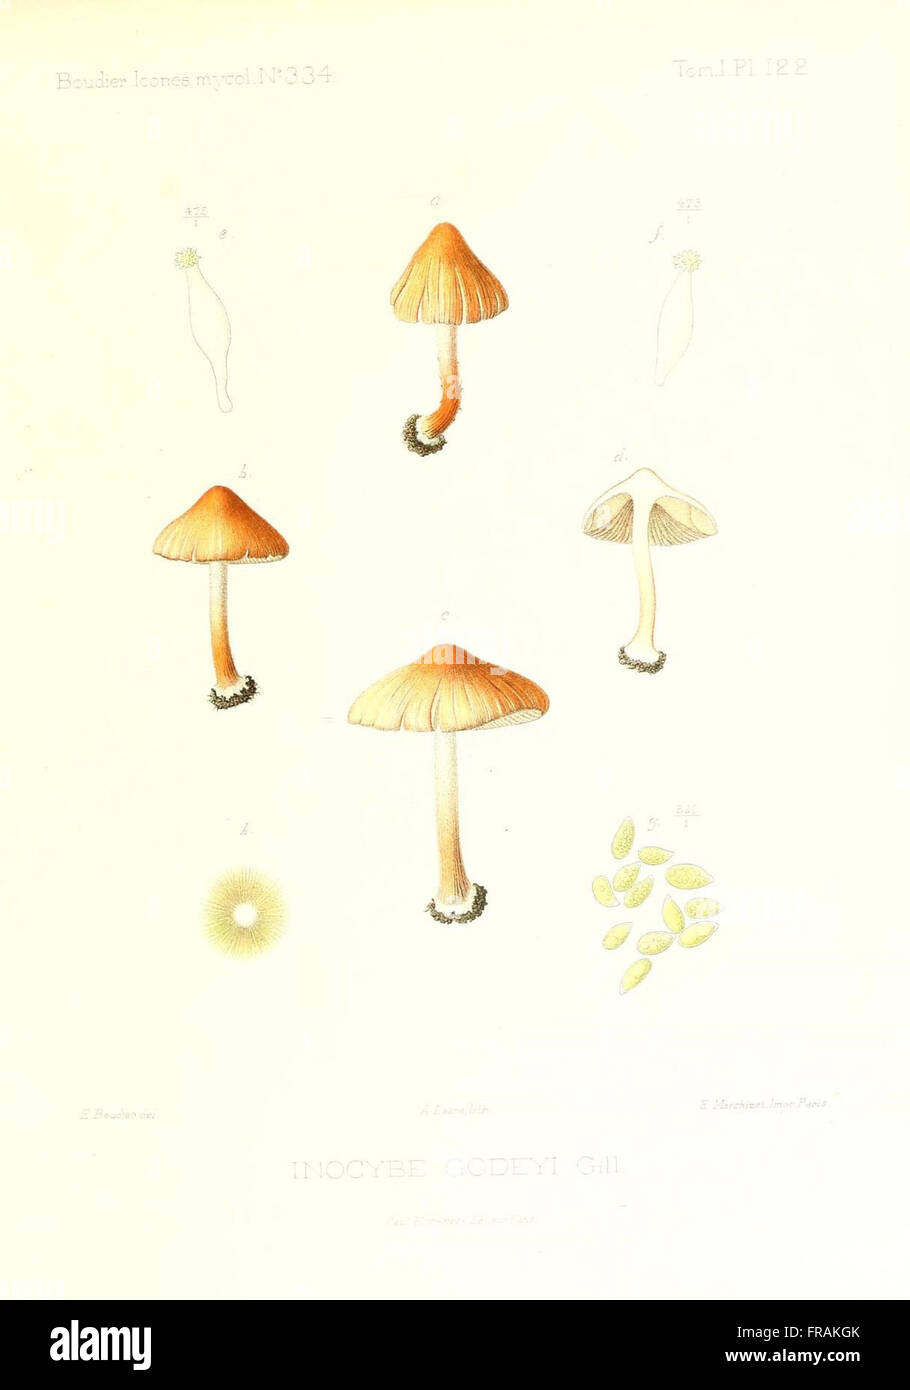 Icones mycologicC3A6, ou Iconographie des champignons de France principalement Discomycetes (Pl. 122) Stock Photo